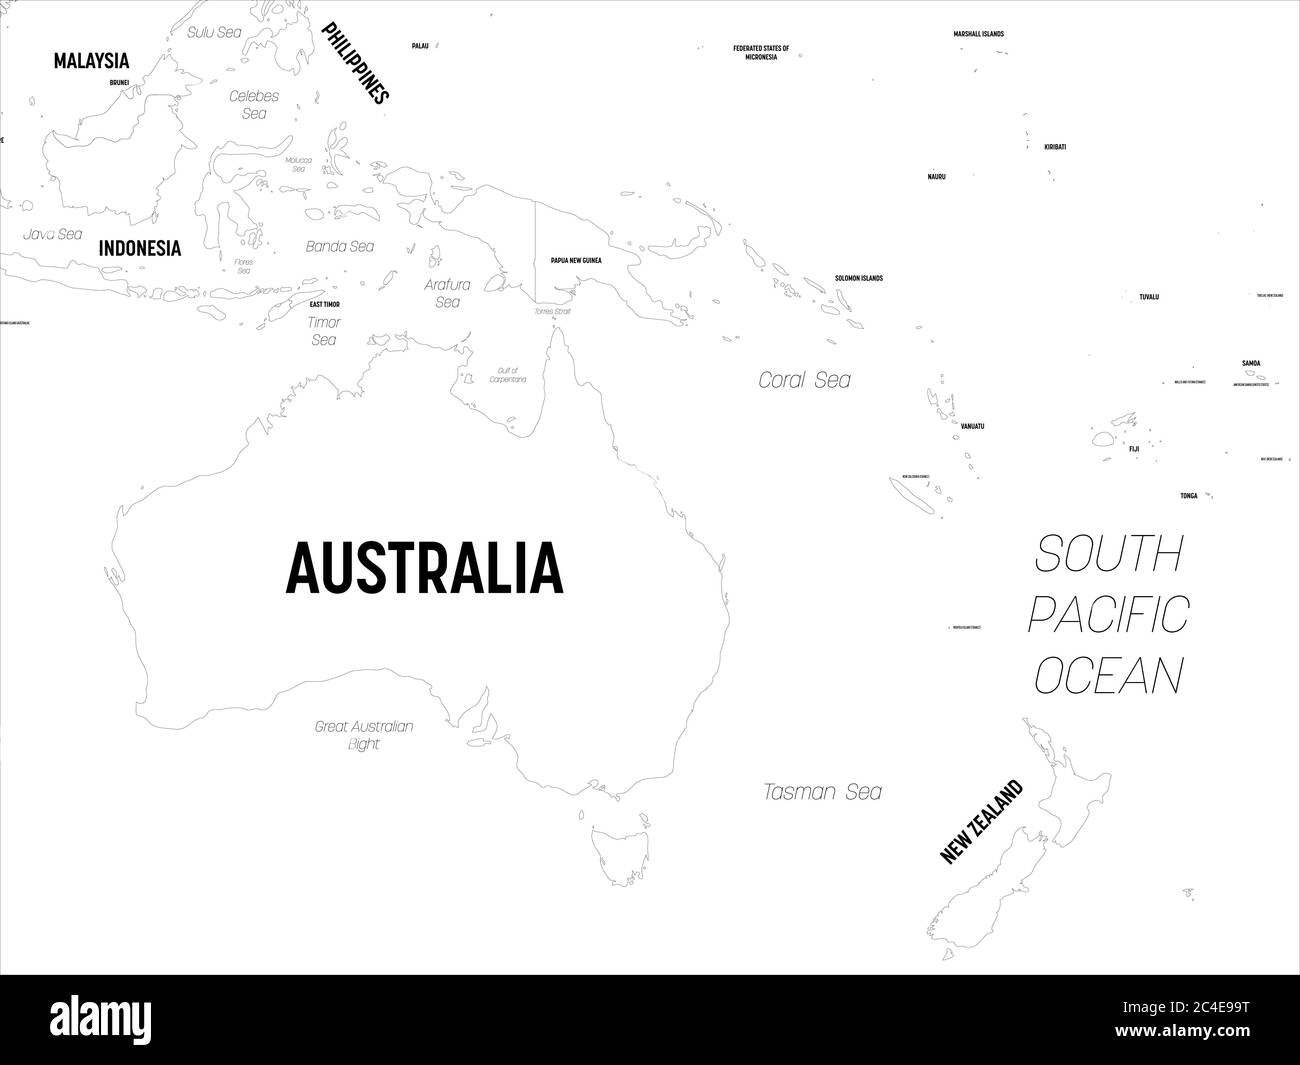 Karte Australien und Ozeanien. Hoch detaillierte politische Karte der australischen und pazifischen Region mit Land, Hauptstadt, Meer und Meer Namen Kennzeichnung. Stock Vektor